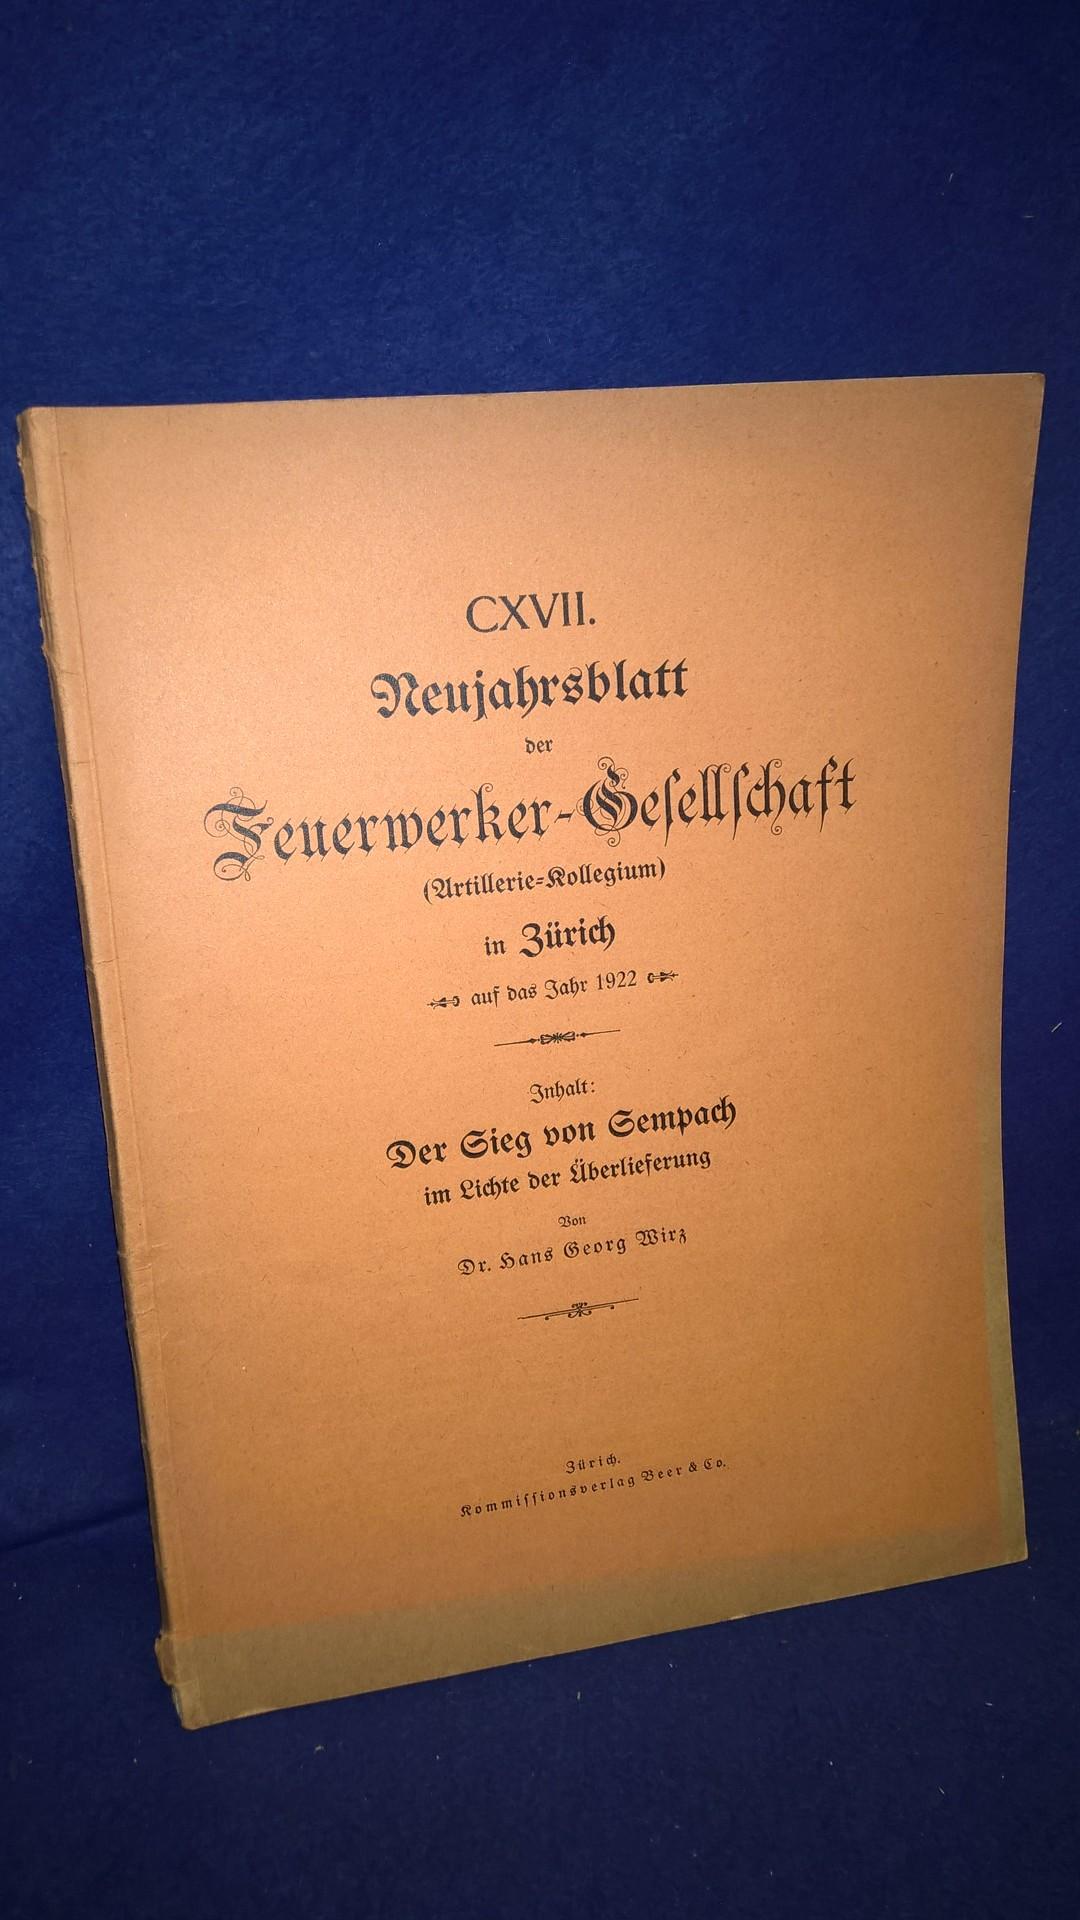 Der Sieg von Sempach im Lichte der Überlieferung. Aus der Reihe: Neujahrsblatt der Feuerwerker-Gesellschaft ( Artillerie-Kollegium ) in Zürich auf das Jahr 1922. 